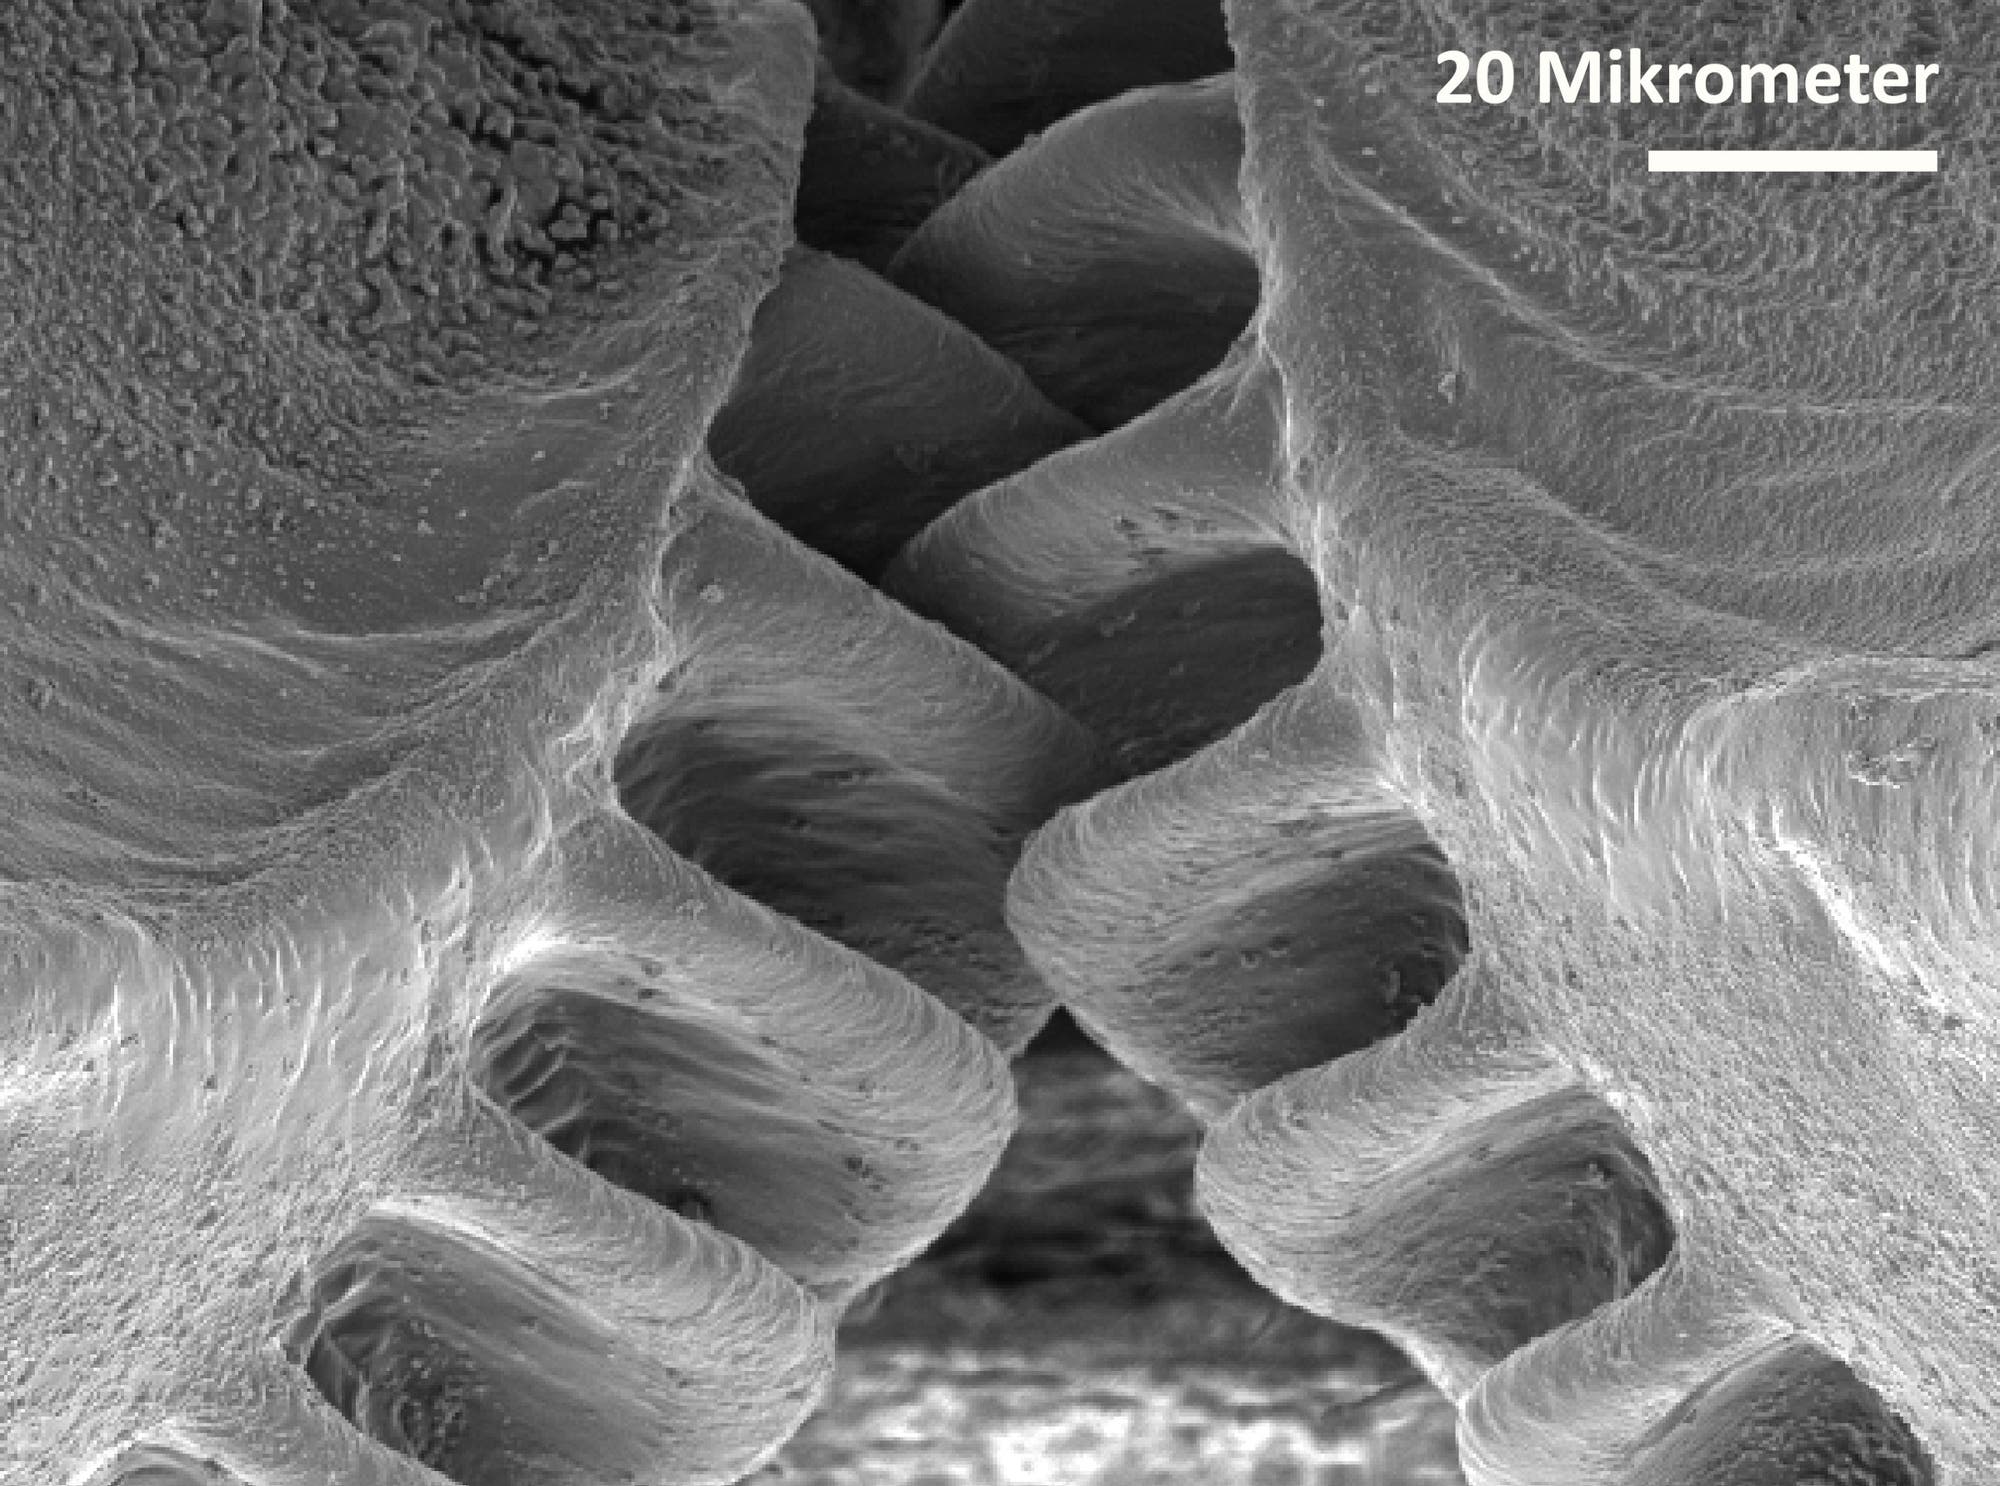 Schwarz-Weiß-Aufnahme aus einem Elektronenmikroskop: Oben rechts ist ein Maßstab von 20 Mikrometern eingeblendet. Das Bild zeigt Details der beiden zahnradförmigen Strukturen an den Hinterbeinen der Käferzikaden.